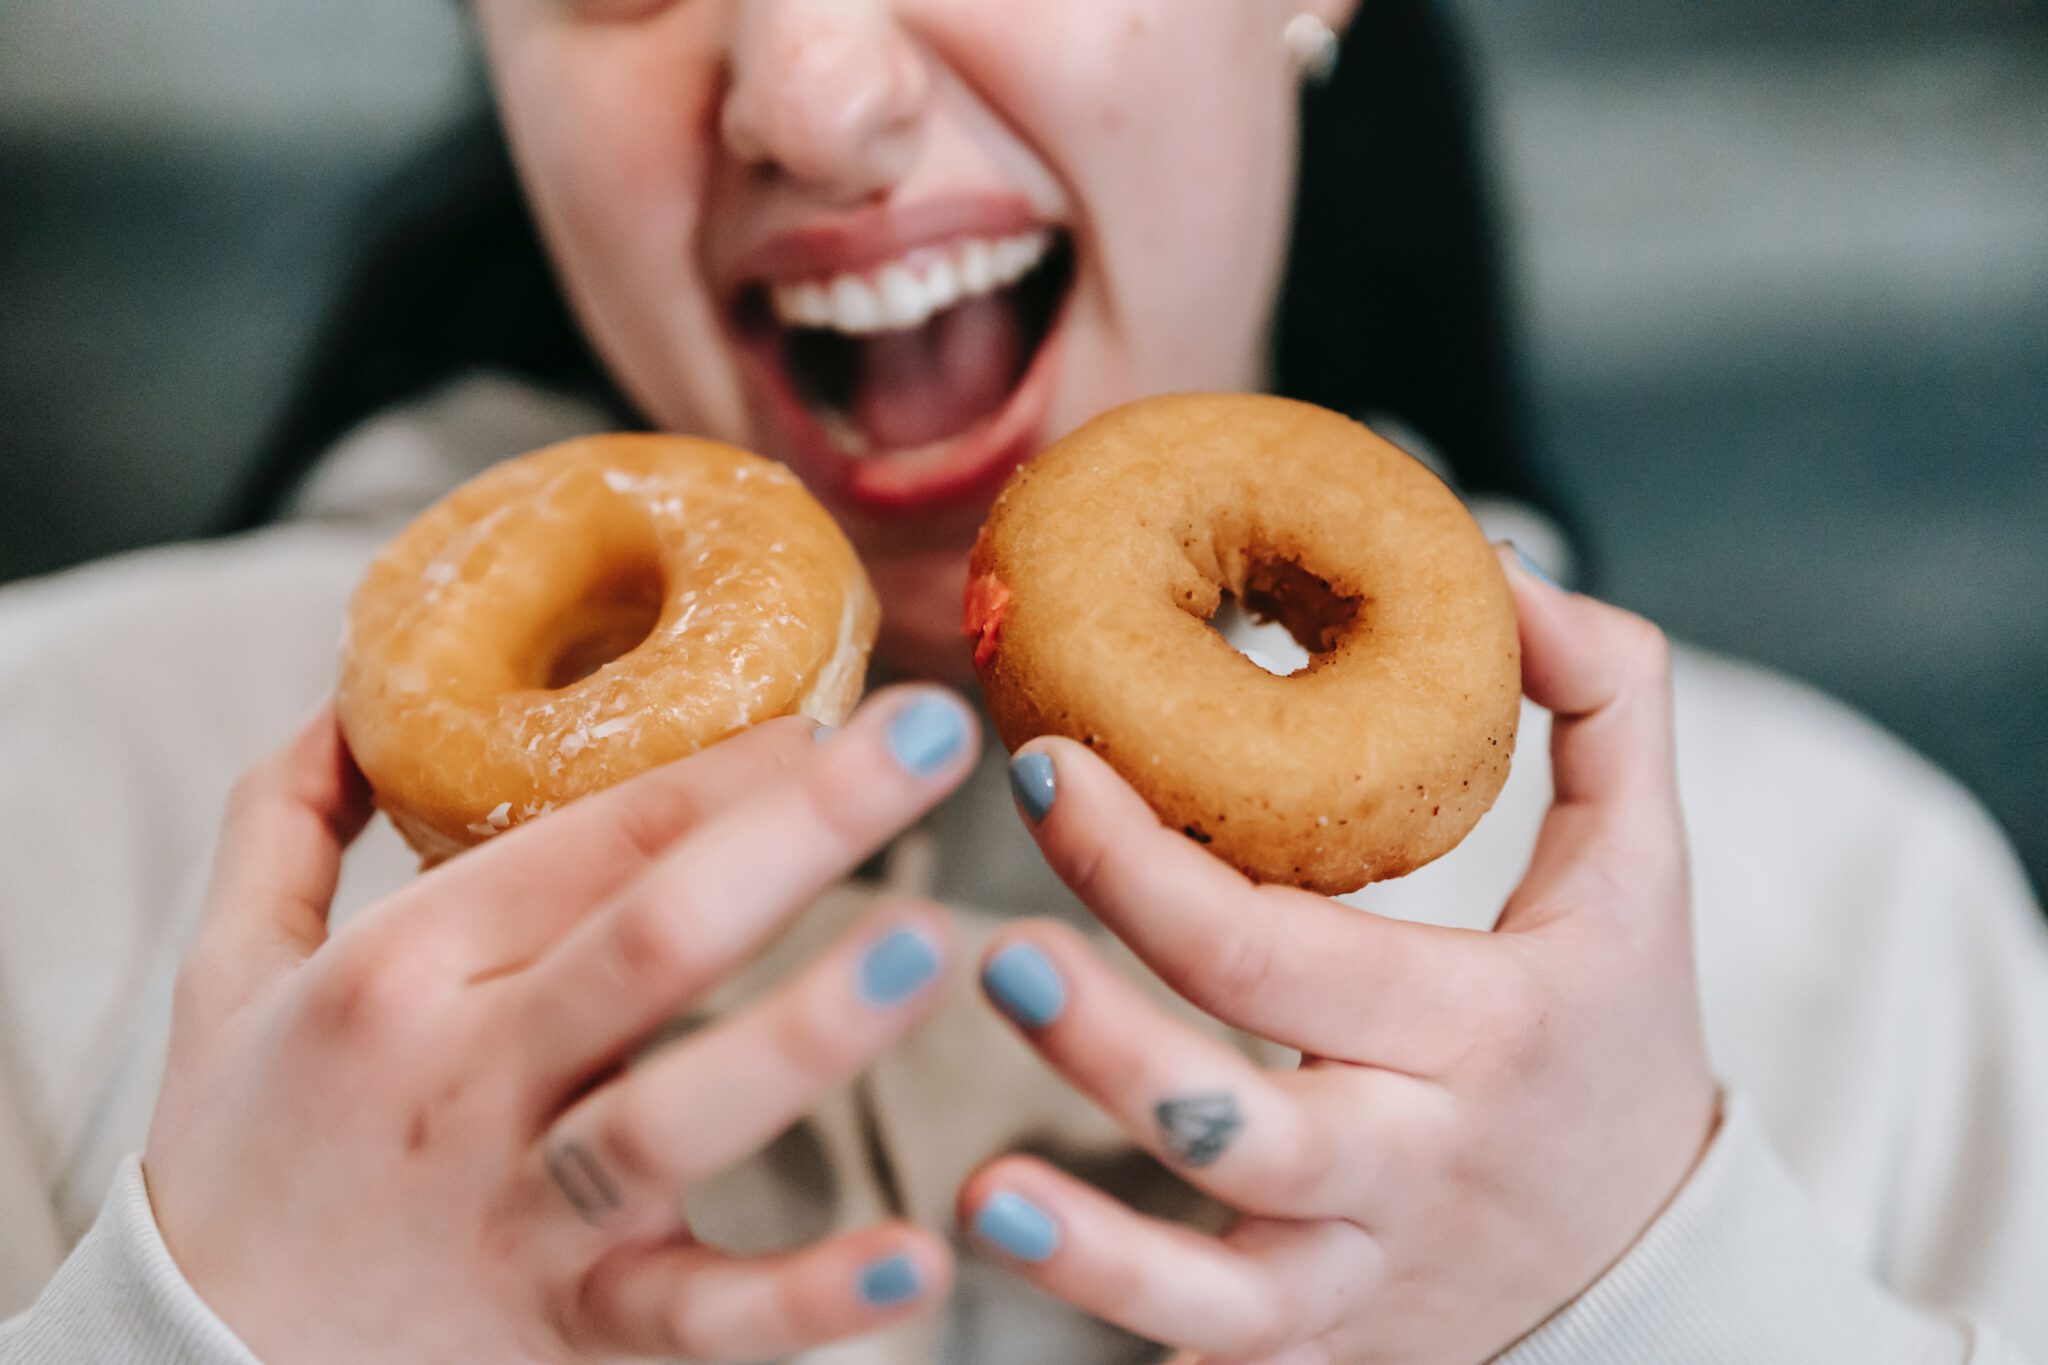 vrouw houdt twee donuts voor haar mond, alsof ze veel gaat eten: een van de beschamende dingen die we doen